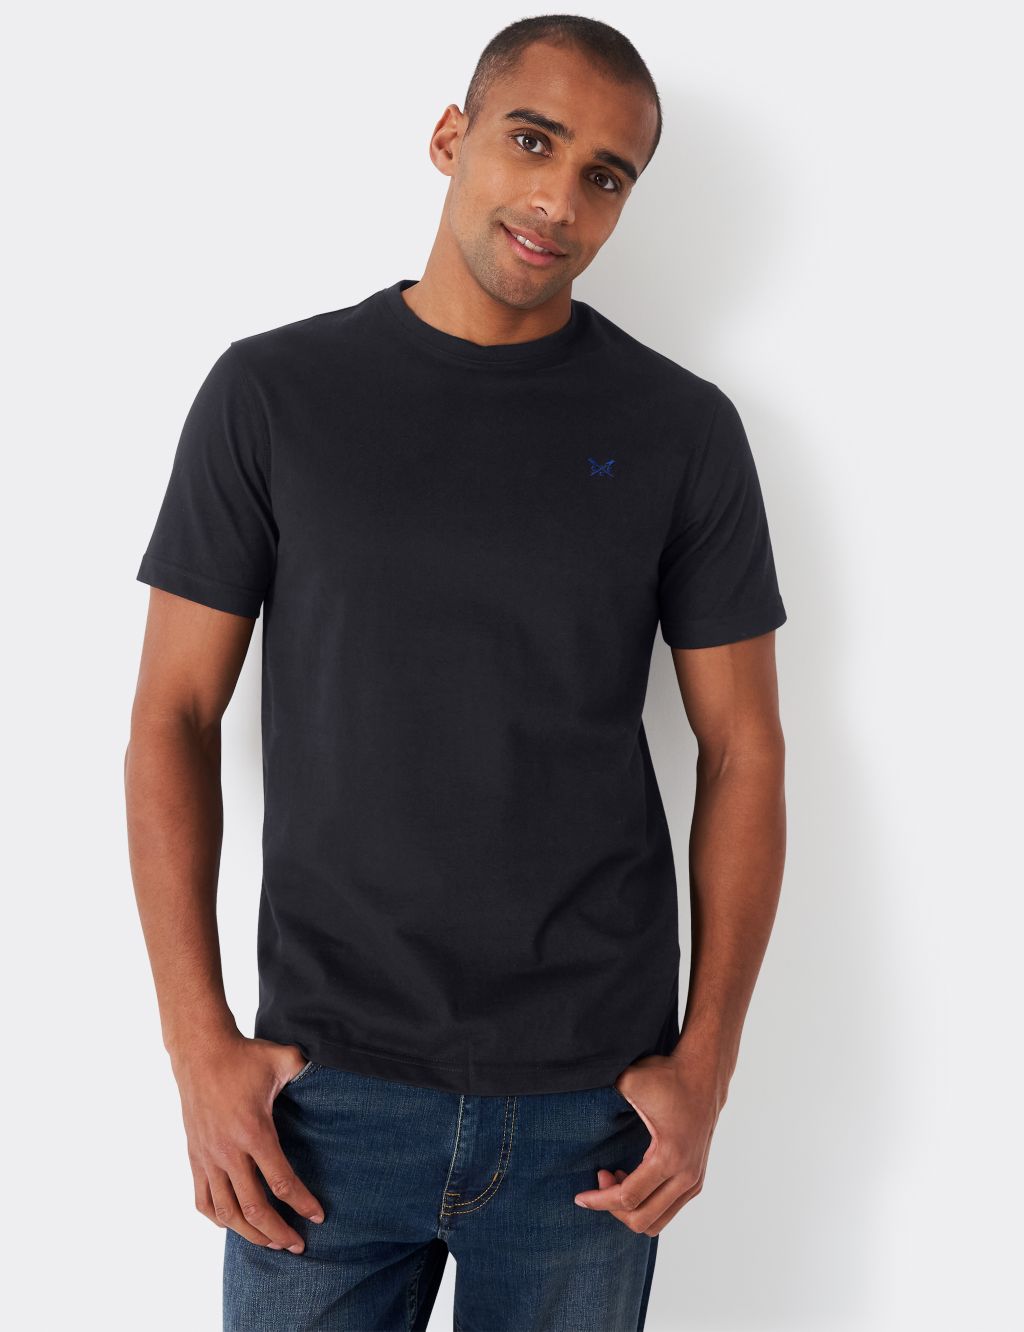 Pure Cotton Crew Neck T-Shirt image 1